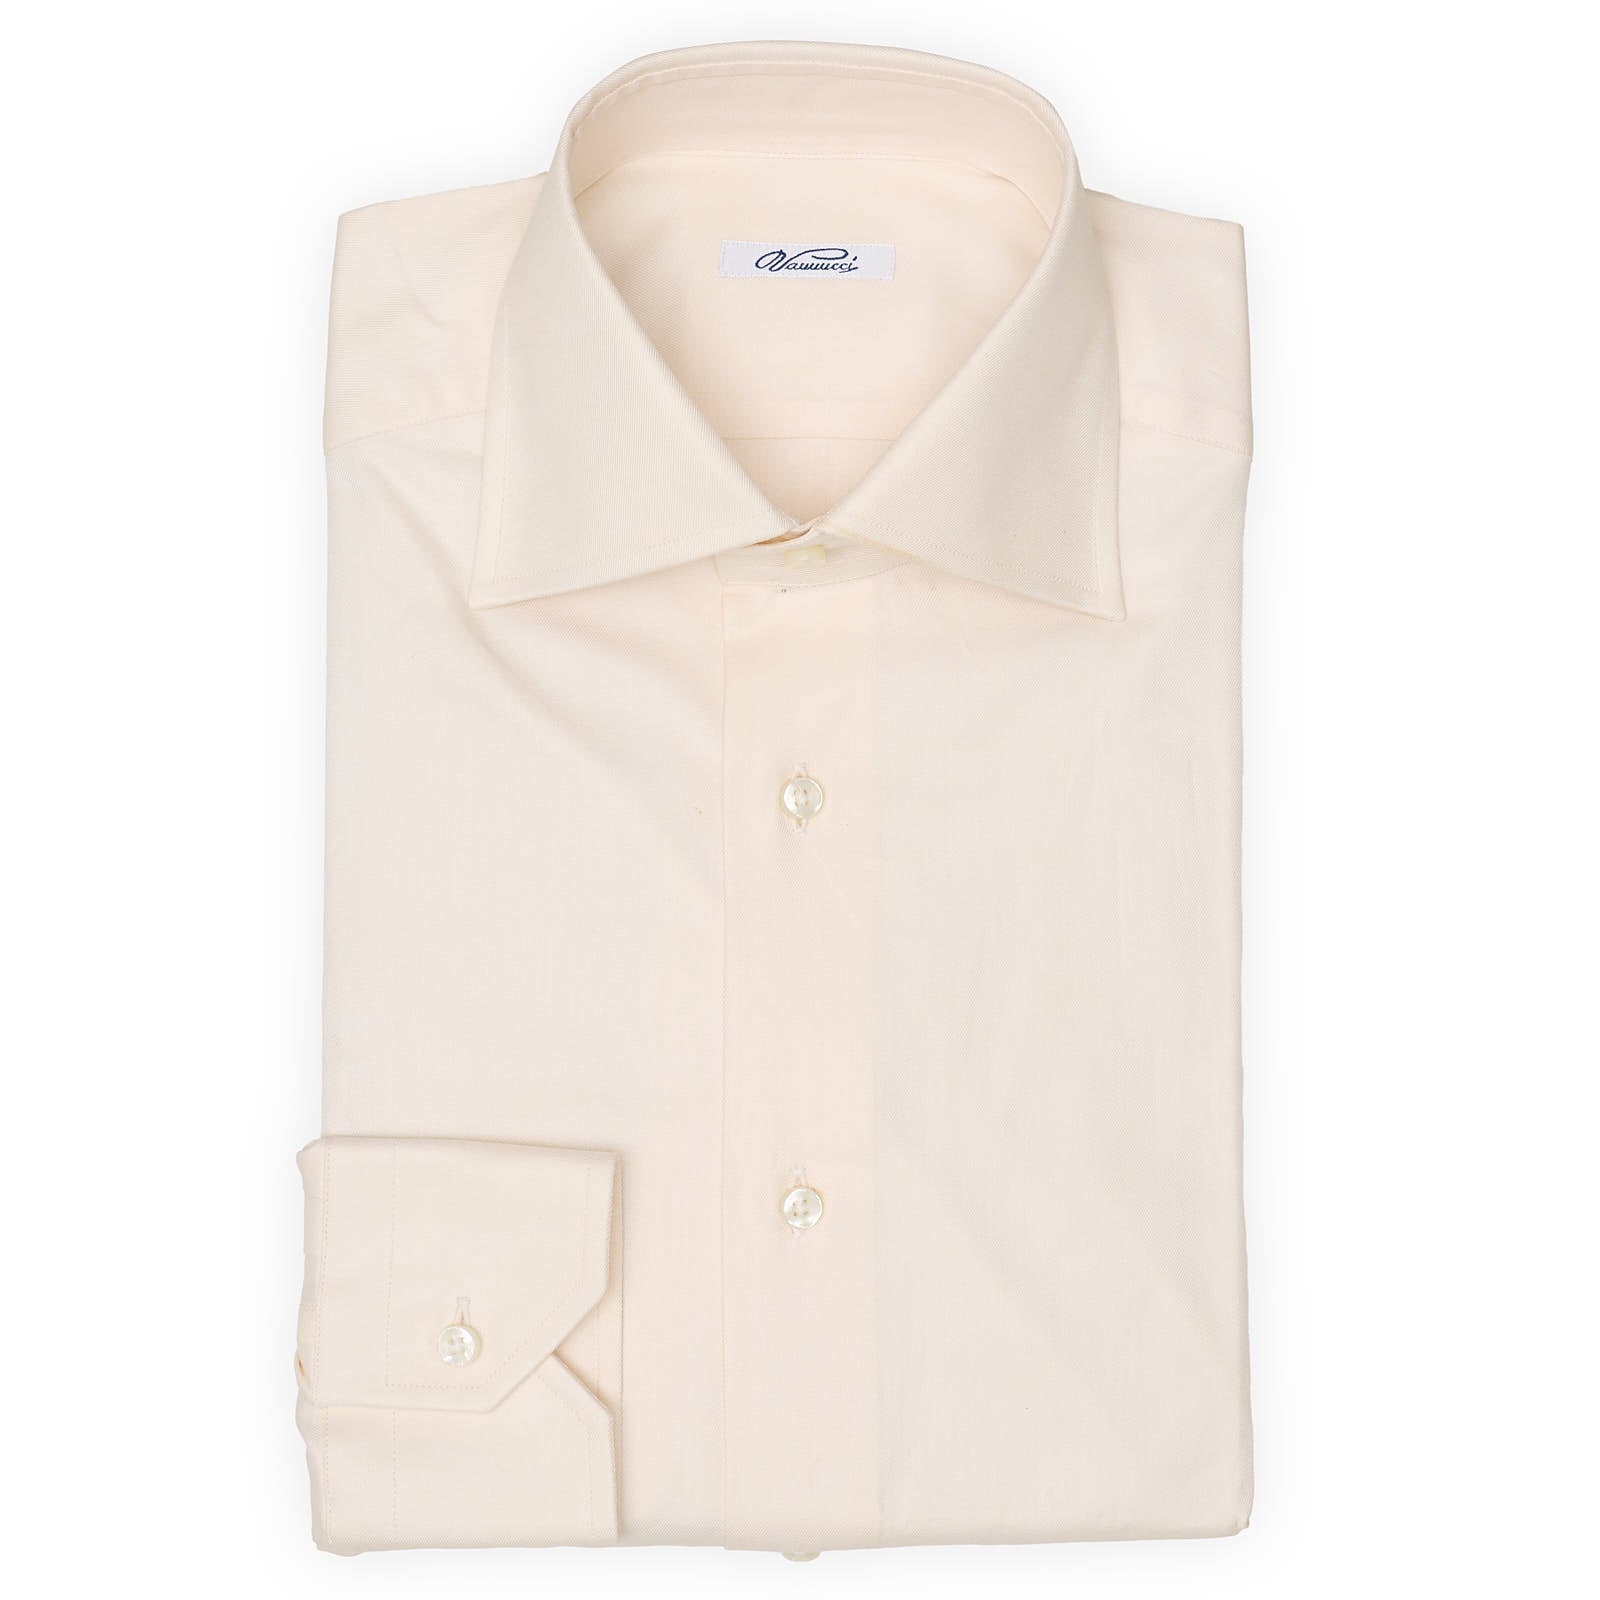 VANNUCCI Milano Beige Twill Cotton Dress Shirt EU 38 NEW US 15